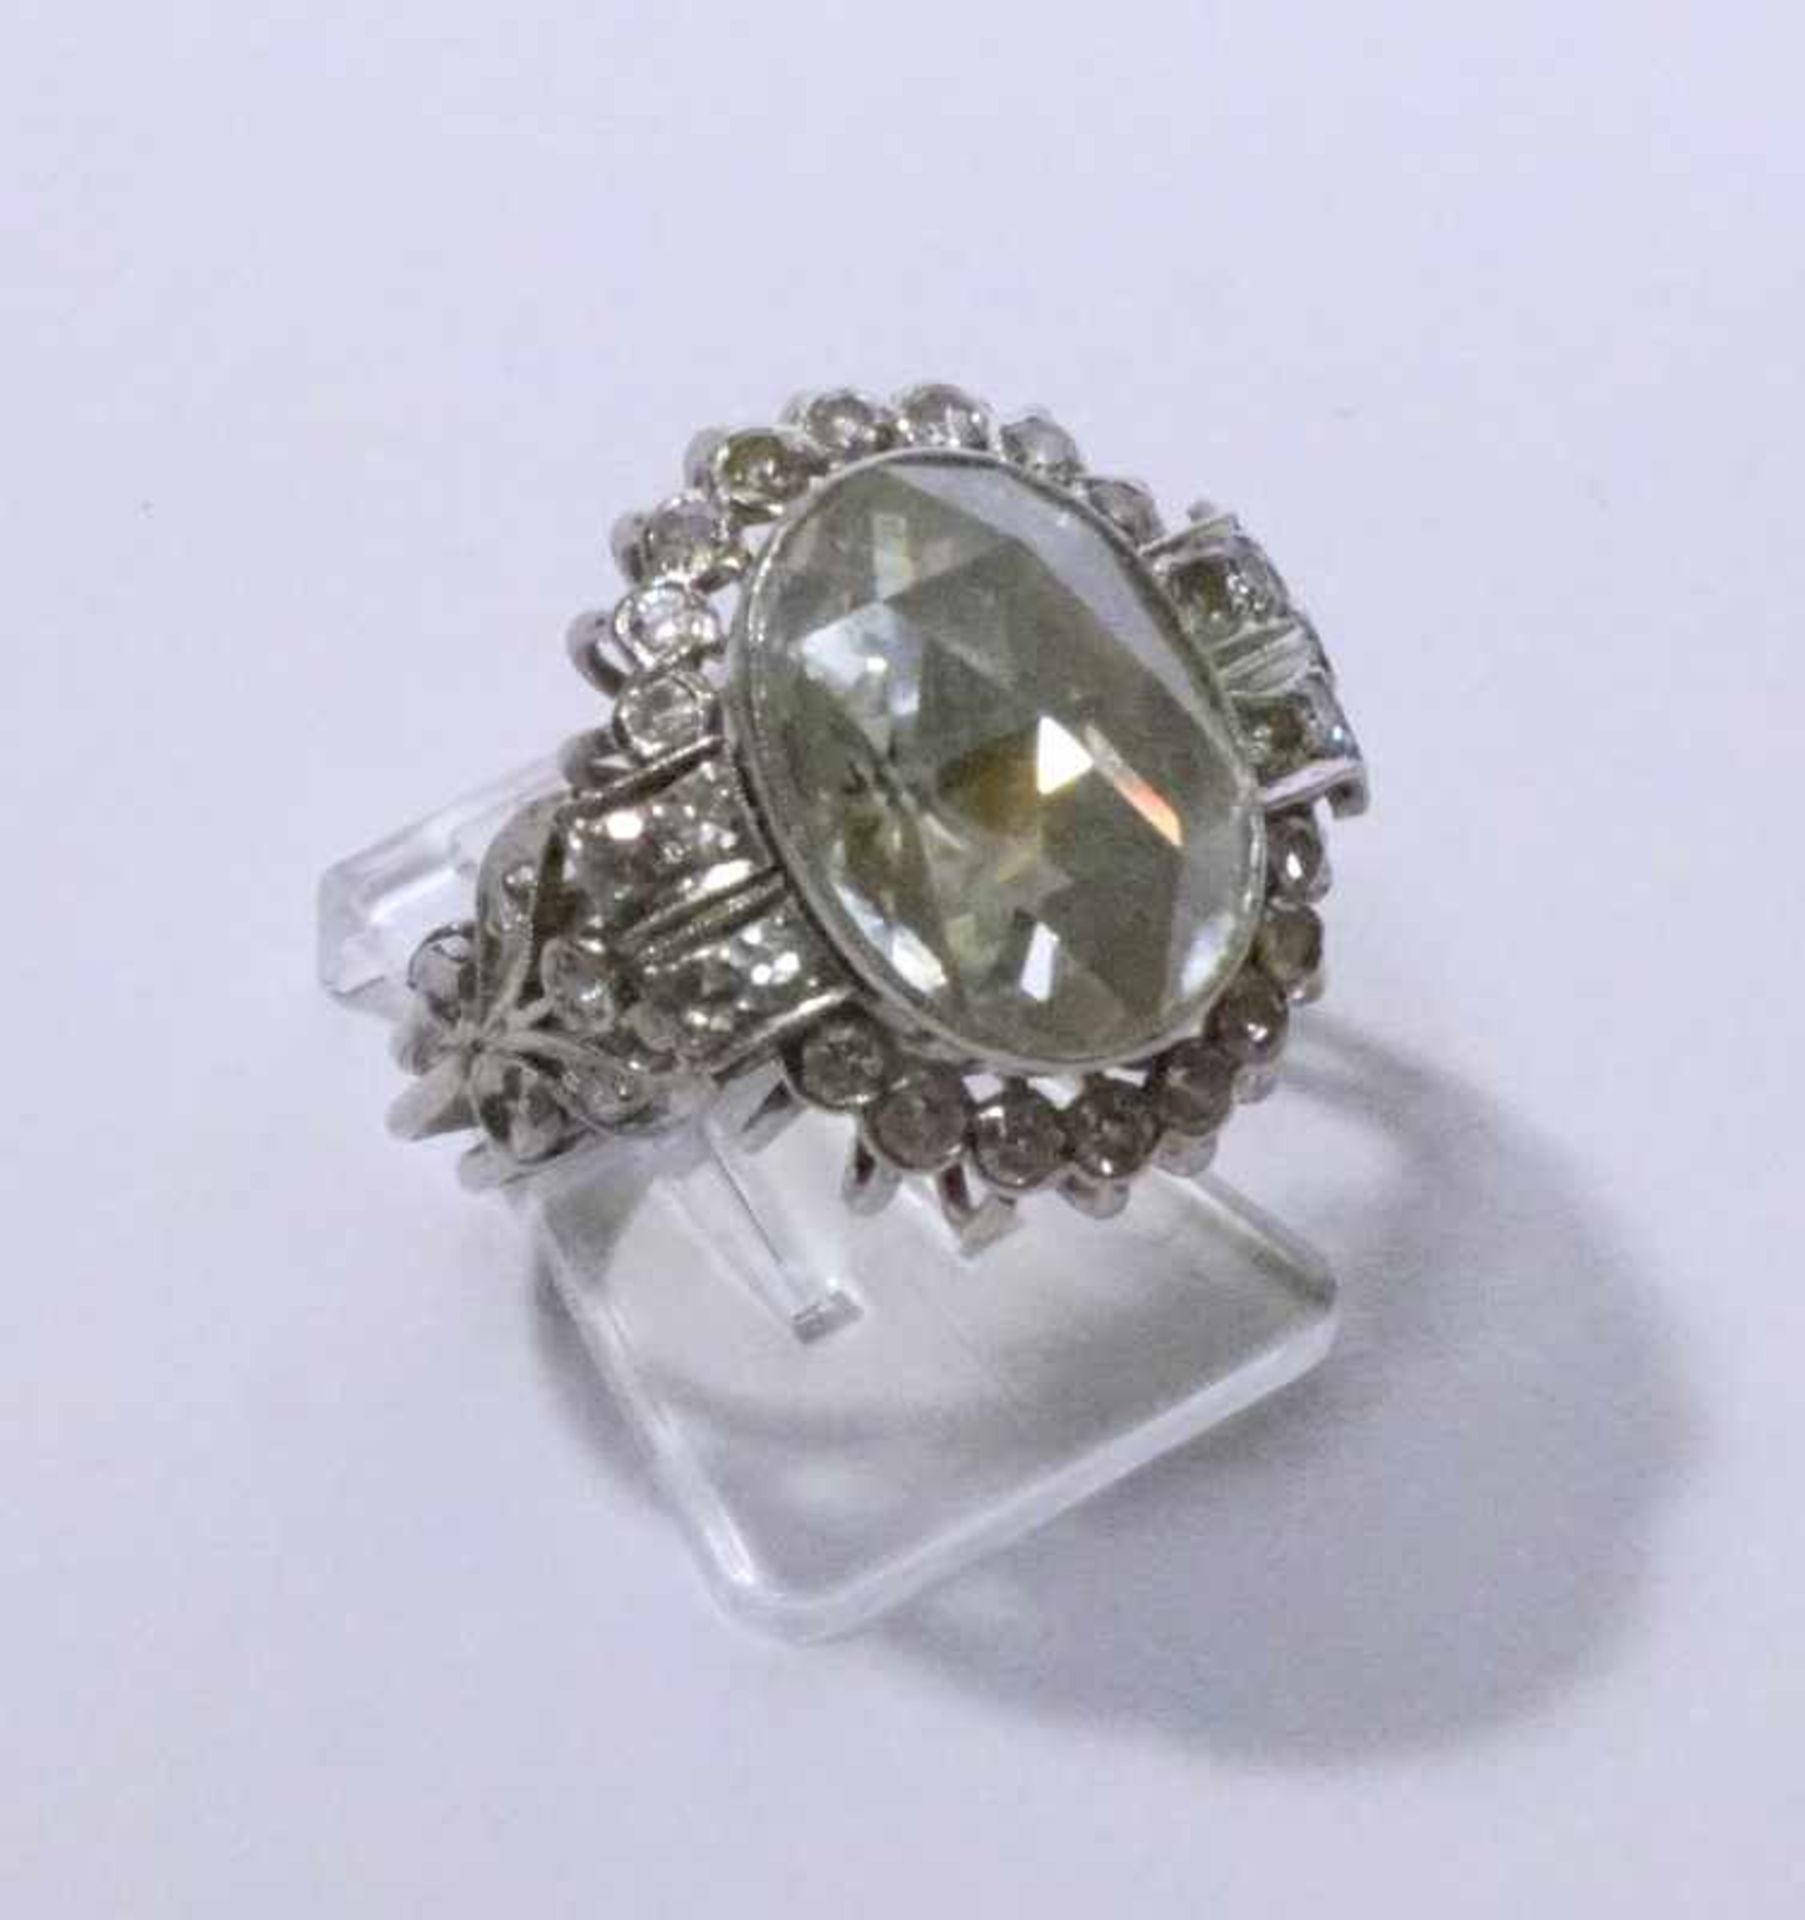 Jugendstil Ring mit zentraler grosser Diamantrose,aussergewöhnlicher Cocktailring mit zentraler